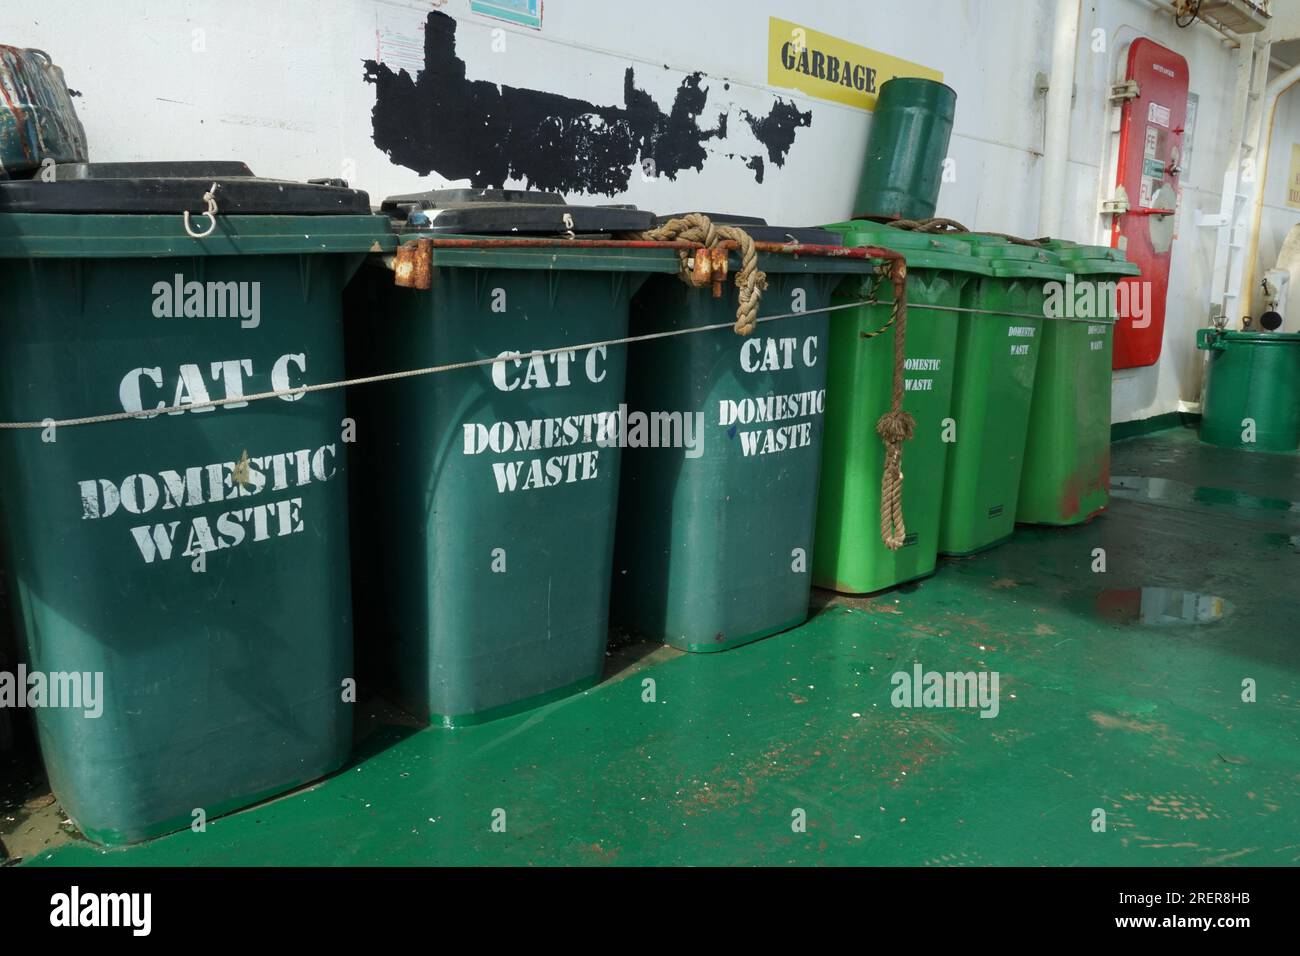 Poubelles en plastique vert pour déchets ménagers de catégorie C, fermement serrées contre les balustrades. Banque D'Images